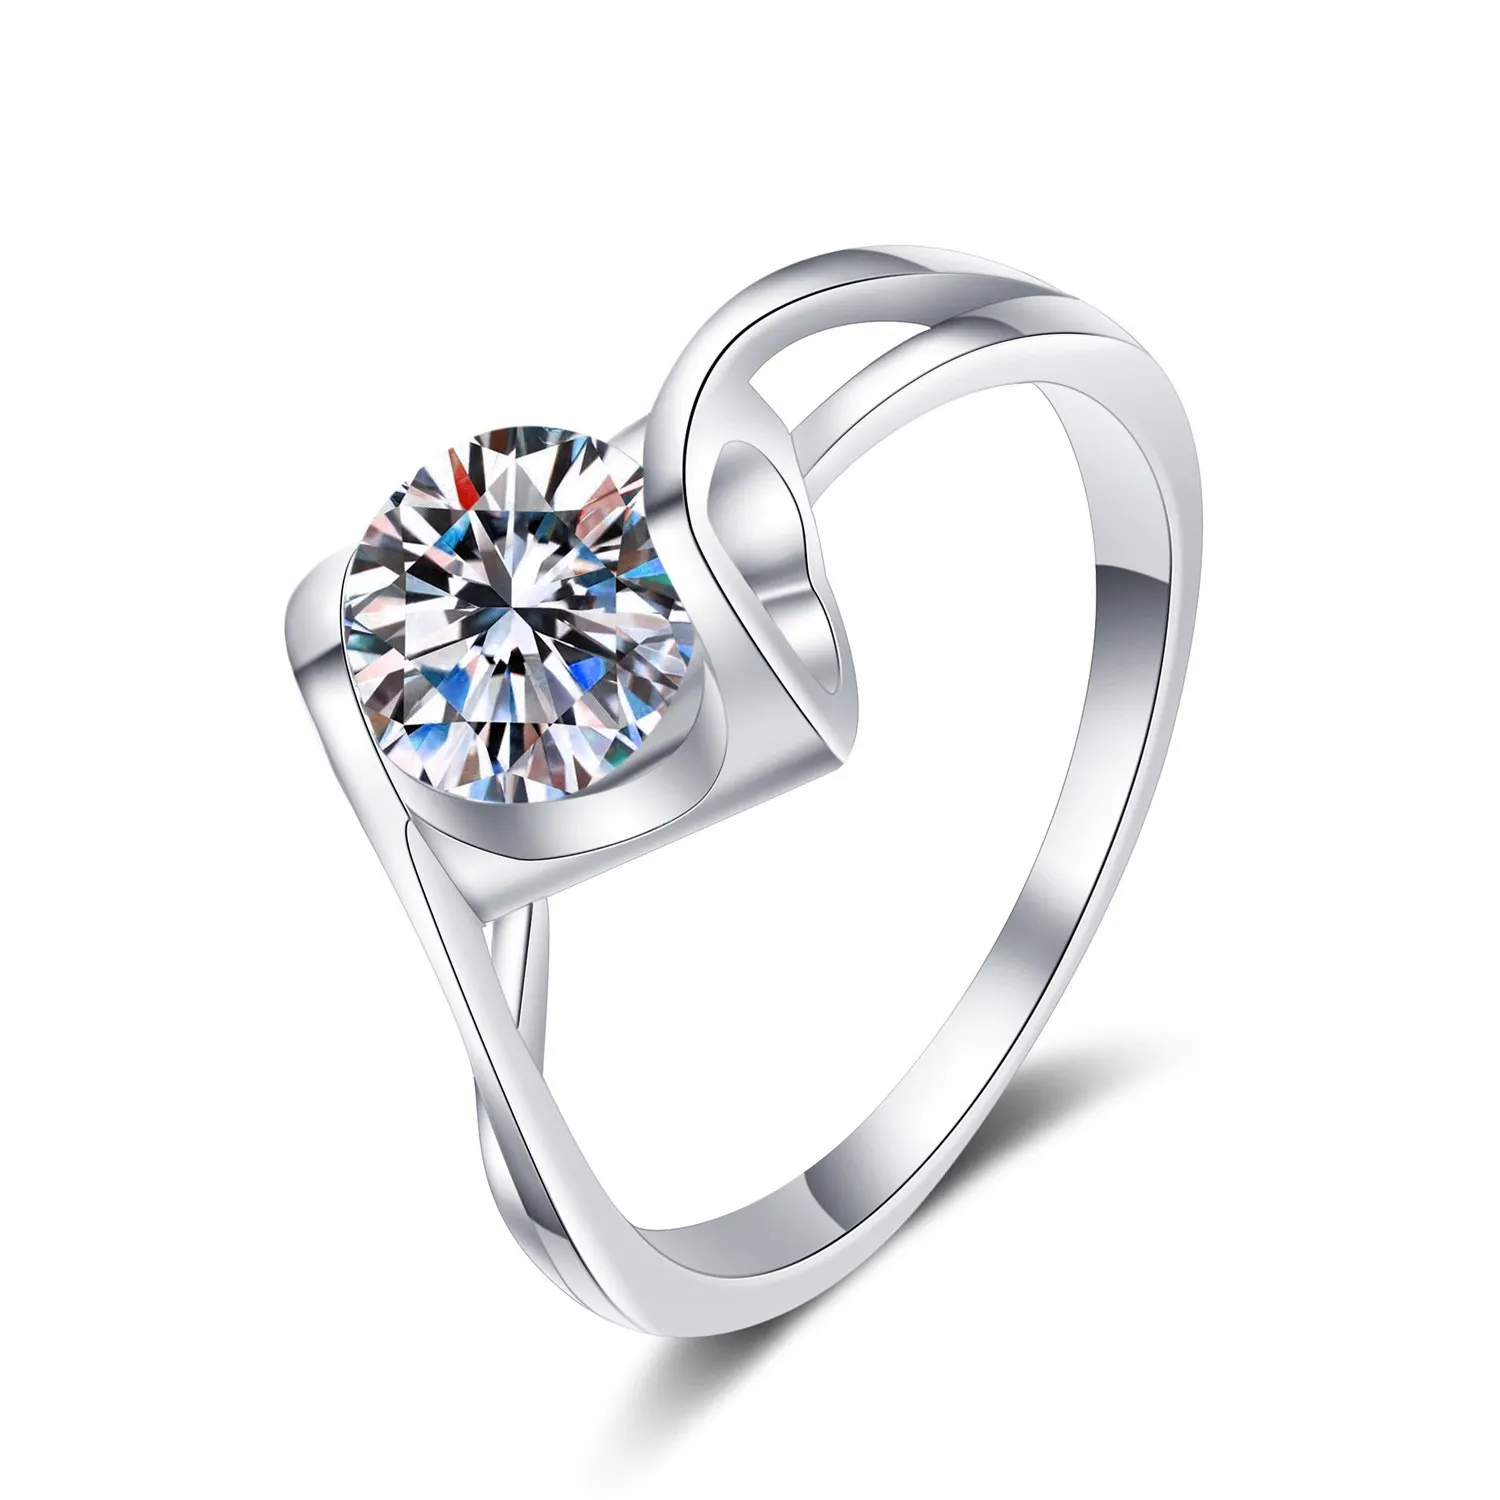 Gioielli coreani fine jewelry D Color VVS Moissanite rings twist Rings 925 Sterling Silver Personal personalizza gioielli con taglio rotondo